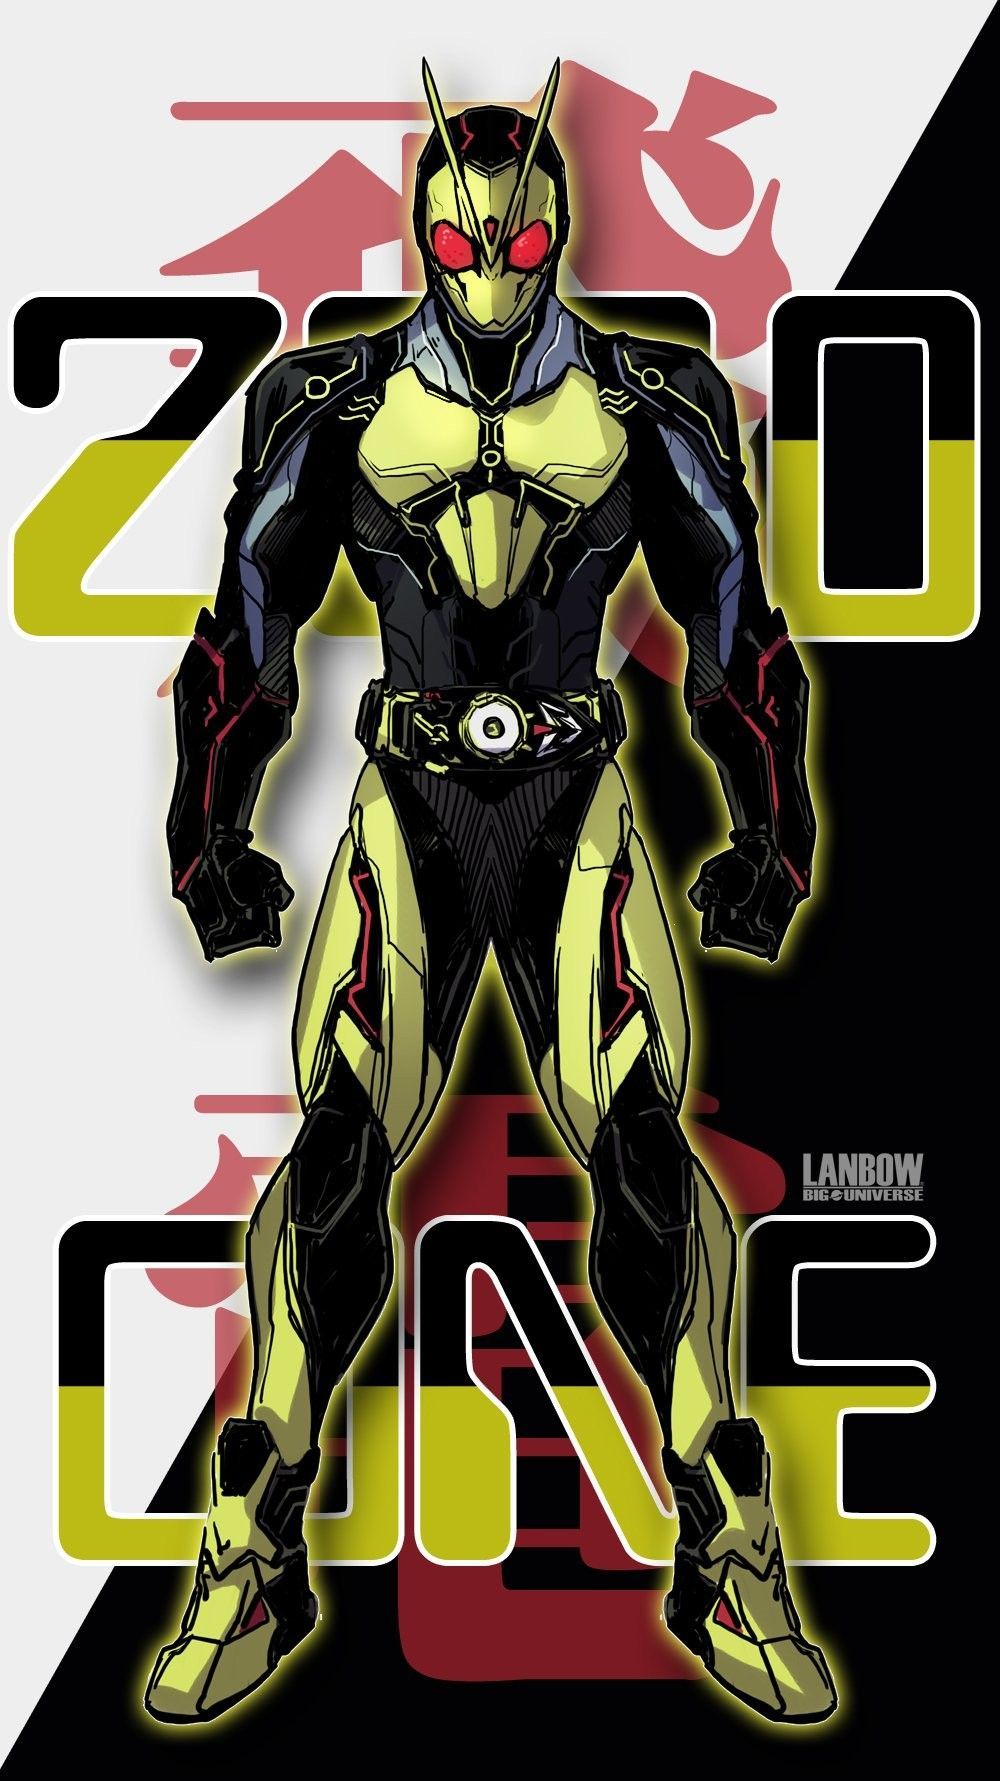 Best Kamen Rider image. Kamen rider, Kamen rider